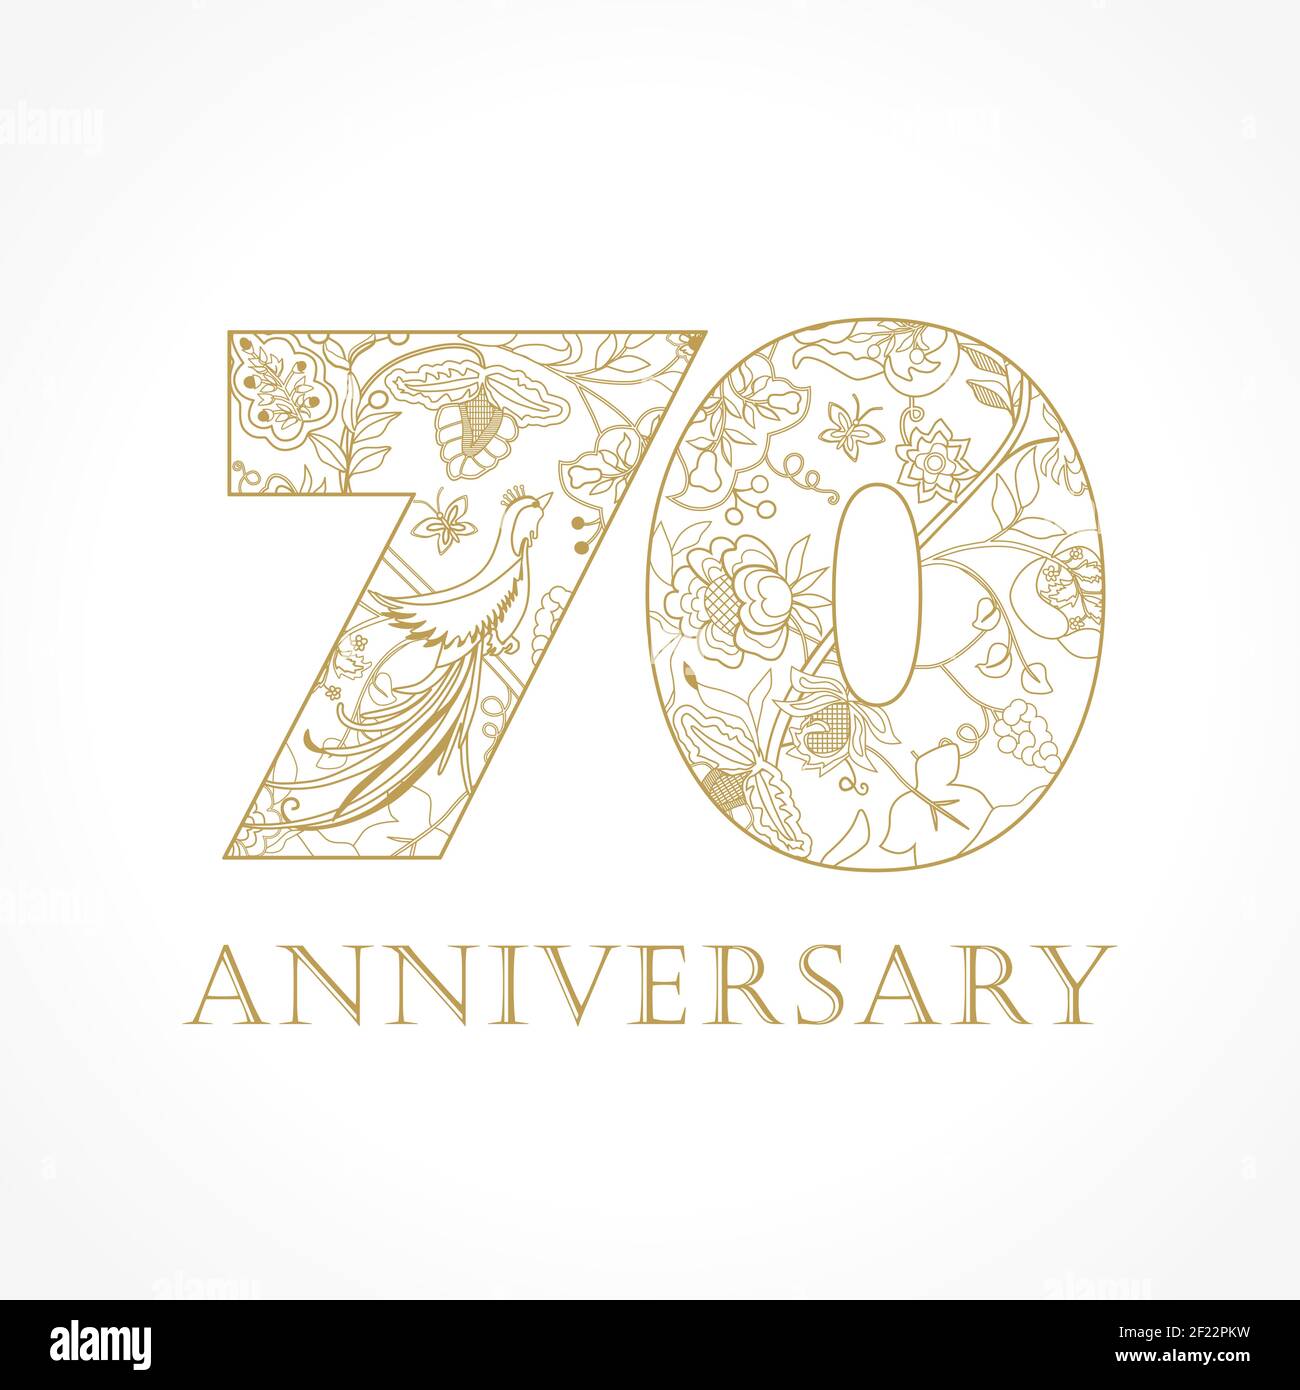 Kreatives Logo Konzept des 70th-jährigen Jubiläums in ethnischen Mustern und Paradiesvögeln. Isolierte abstrakte Grafik-Design-Vorlage. Top-70-Schild. Stock Vektor